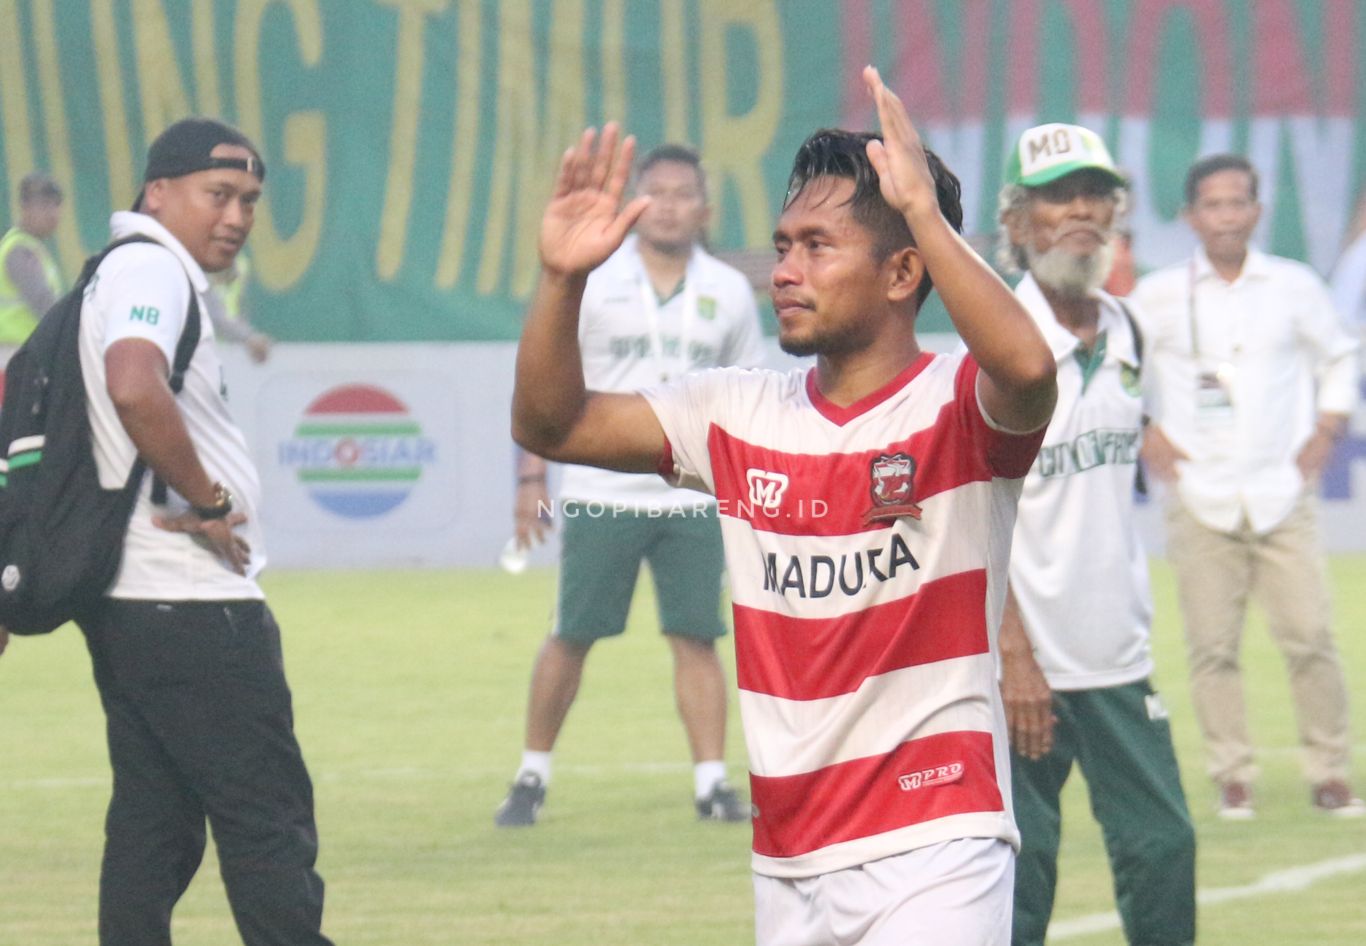 Pemain Madura United, Andik Vermansah. (Foto: Haris/ngopibareng.id)